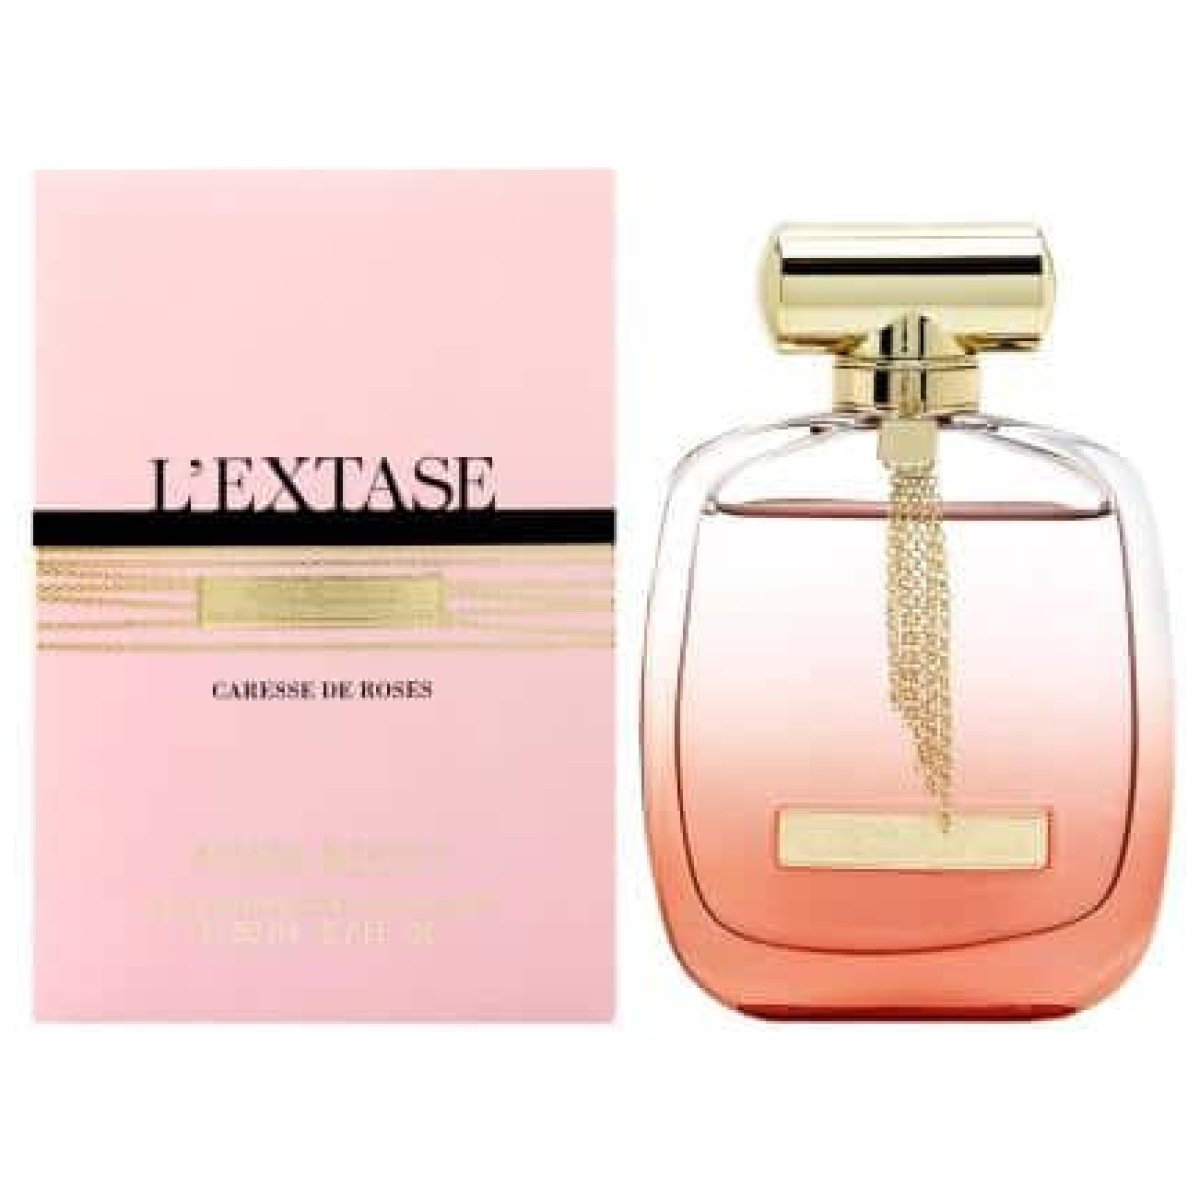 Nina Ricci L'Extase Caresse De Roses EDP Perfume For Women 80 ml